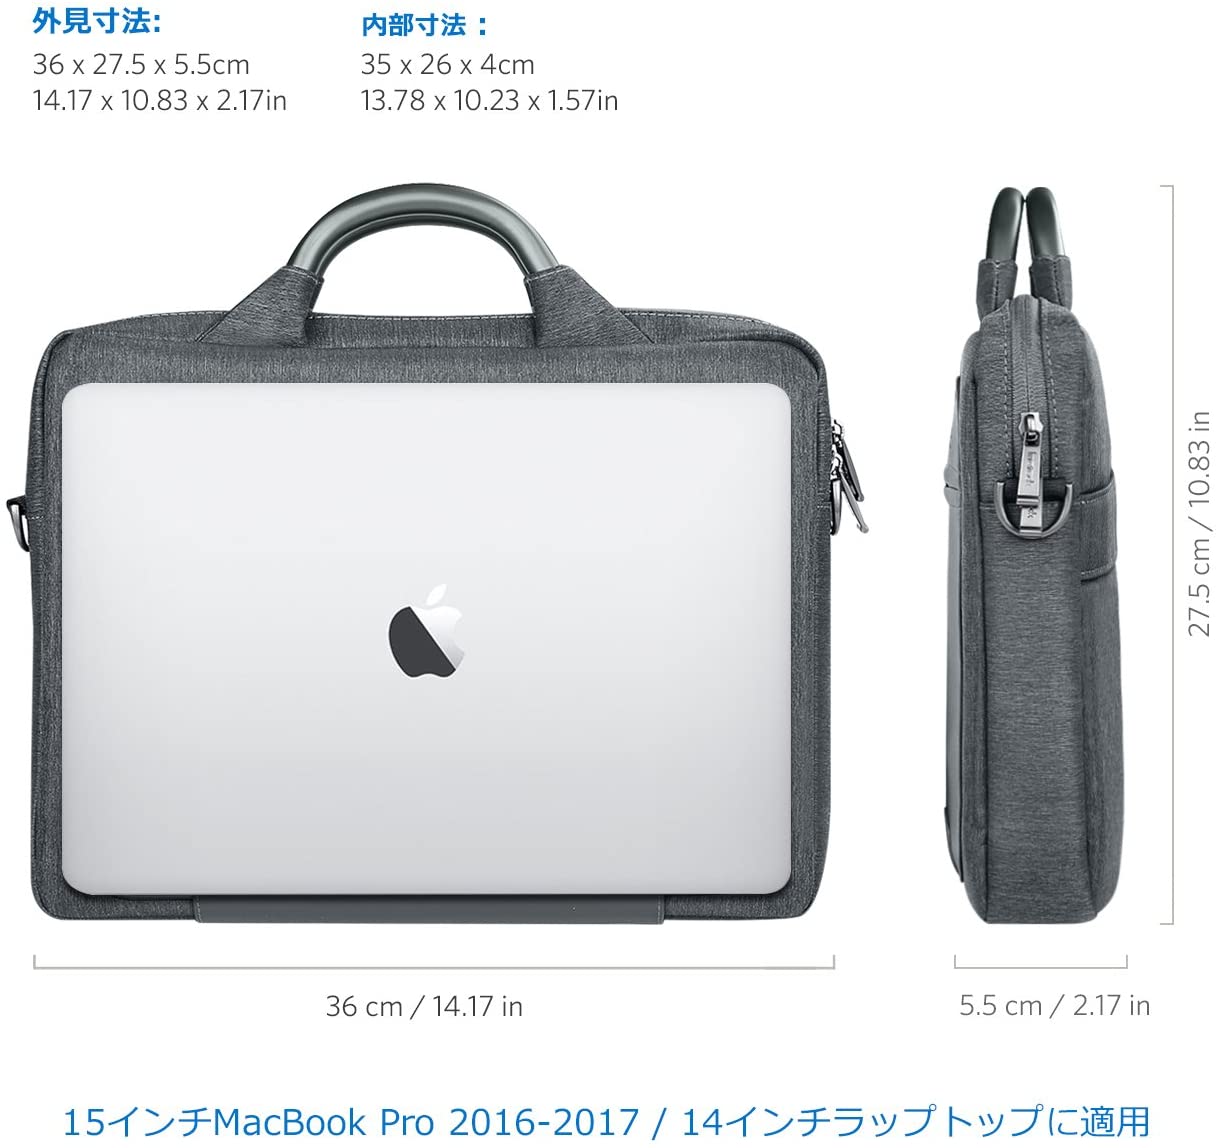 13.5-15インチ New MacBook Pro/Microsoft Surface Book ハンドヘルドバッグ LB1406，dark gray - Inateckバックパックジャパン